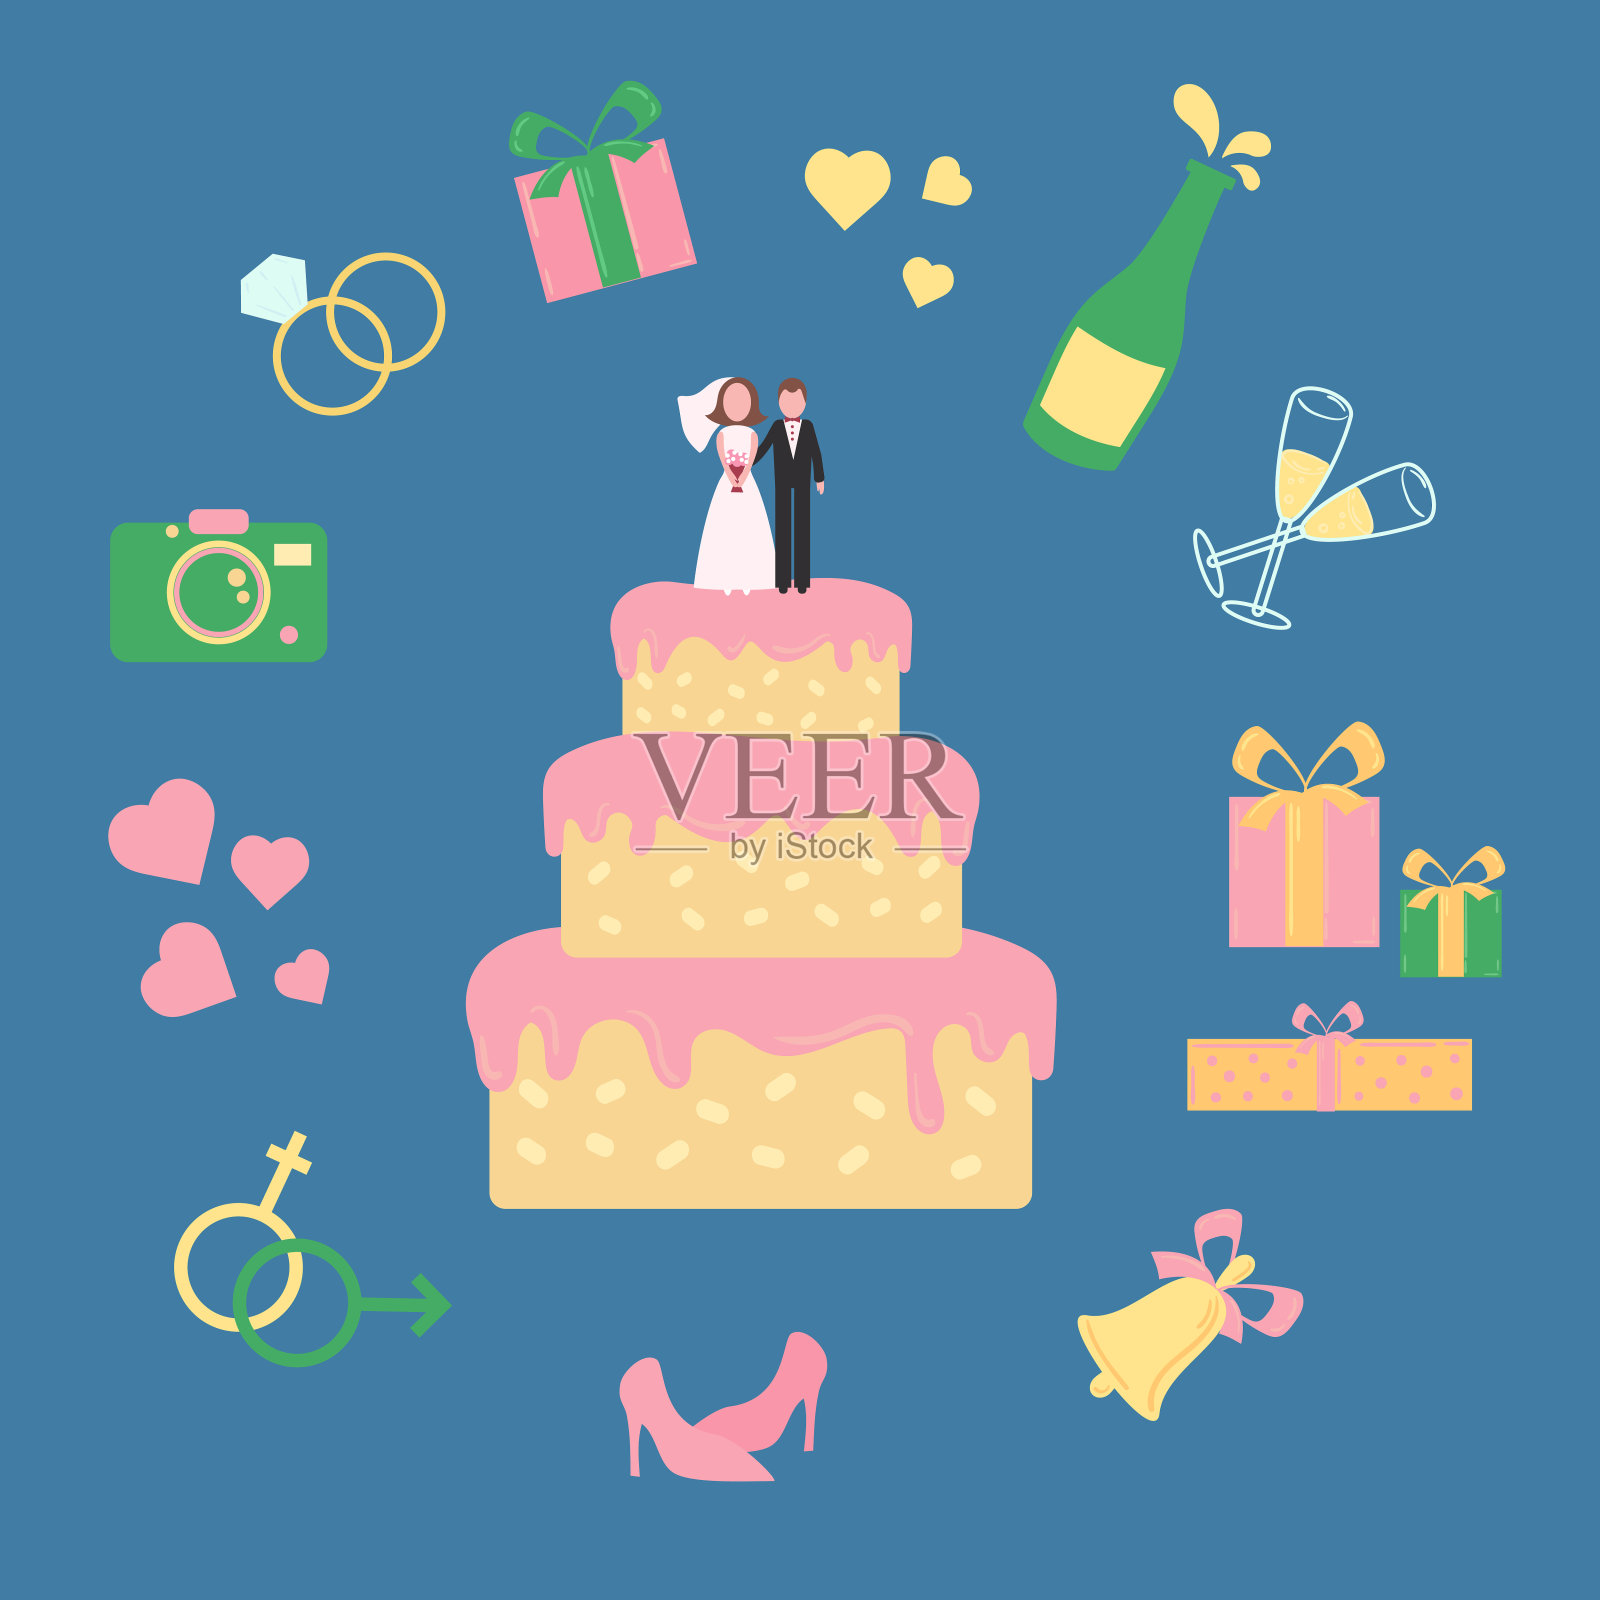 蛋糕上有新郎和新娘的雕像。结婚的图标插画图片素材